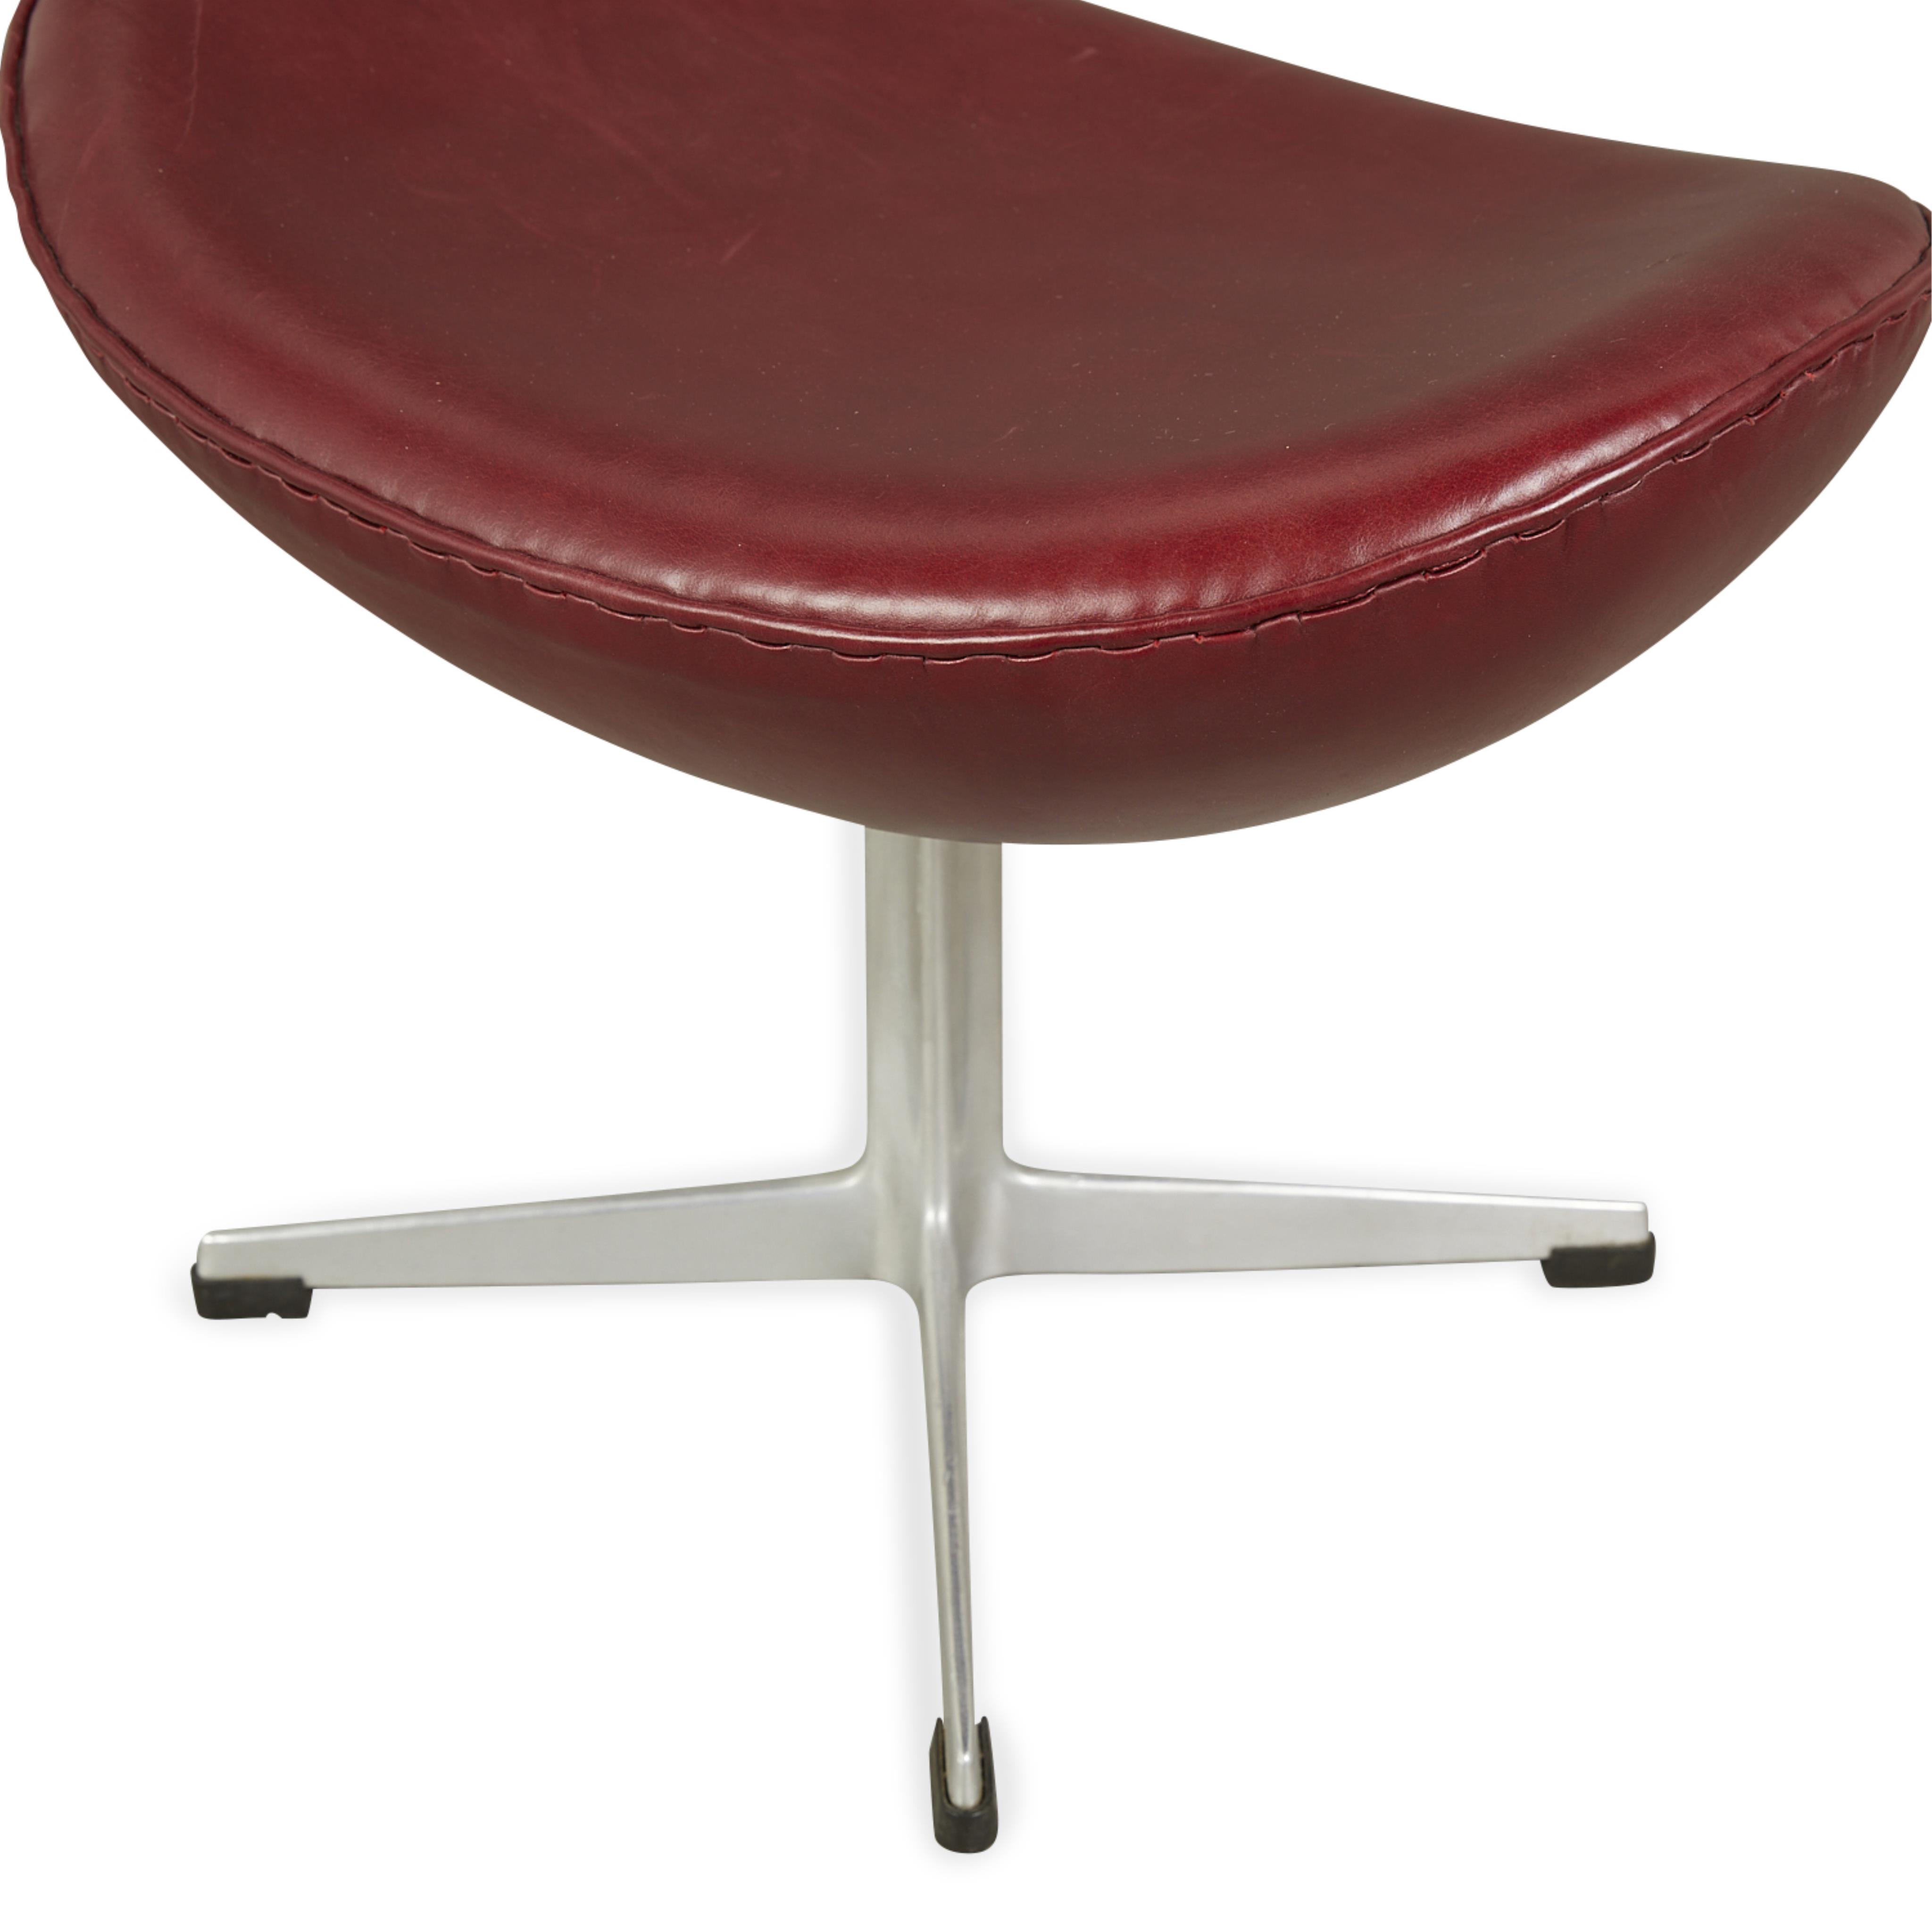 Arne Jacobsen for Hansen Leather Egg Chair 1964 - Image 16 of 17